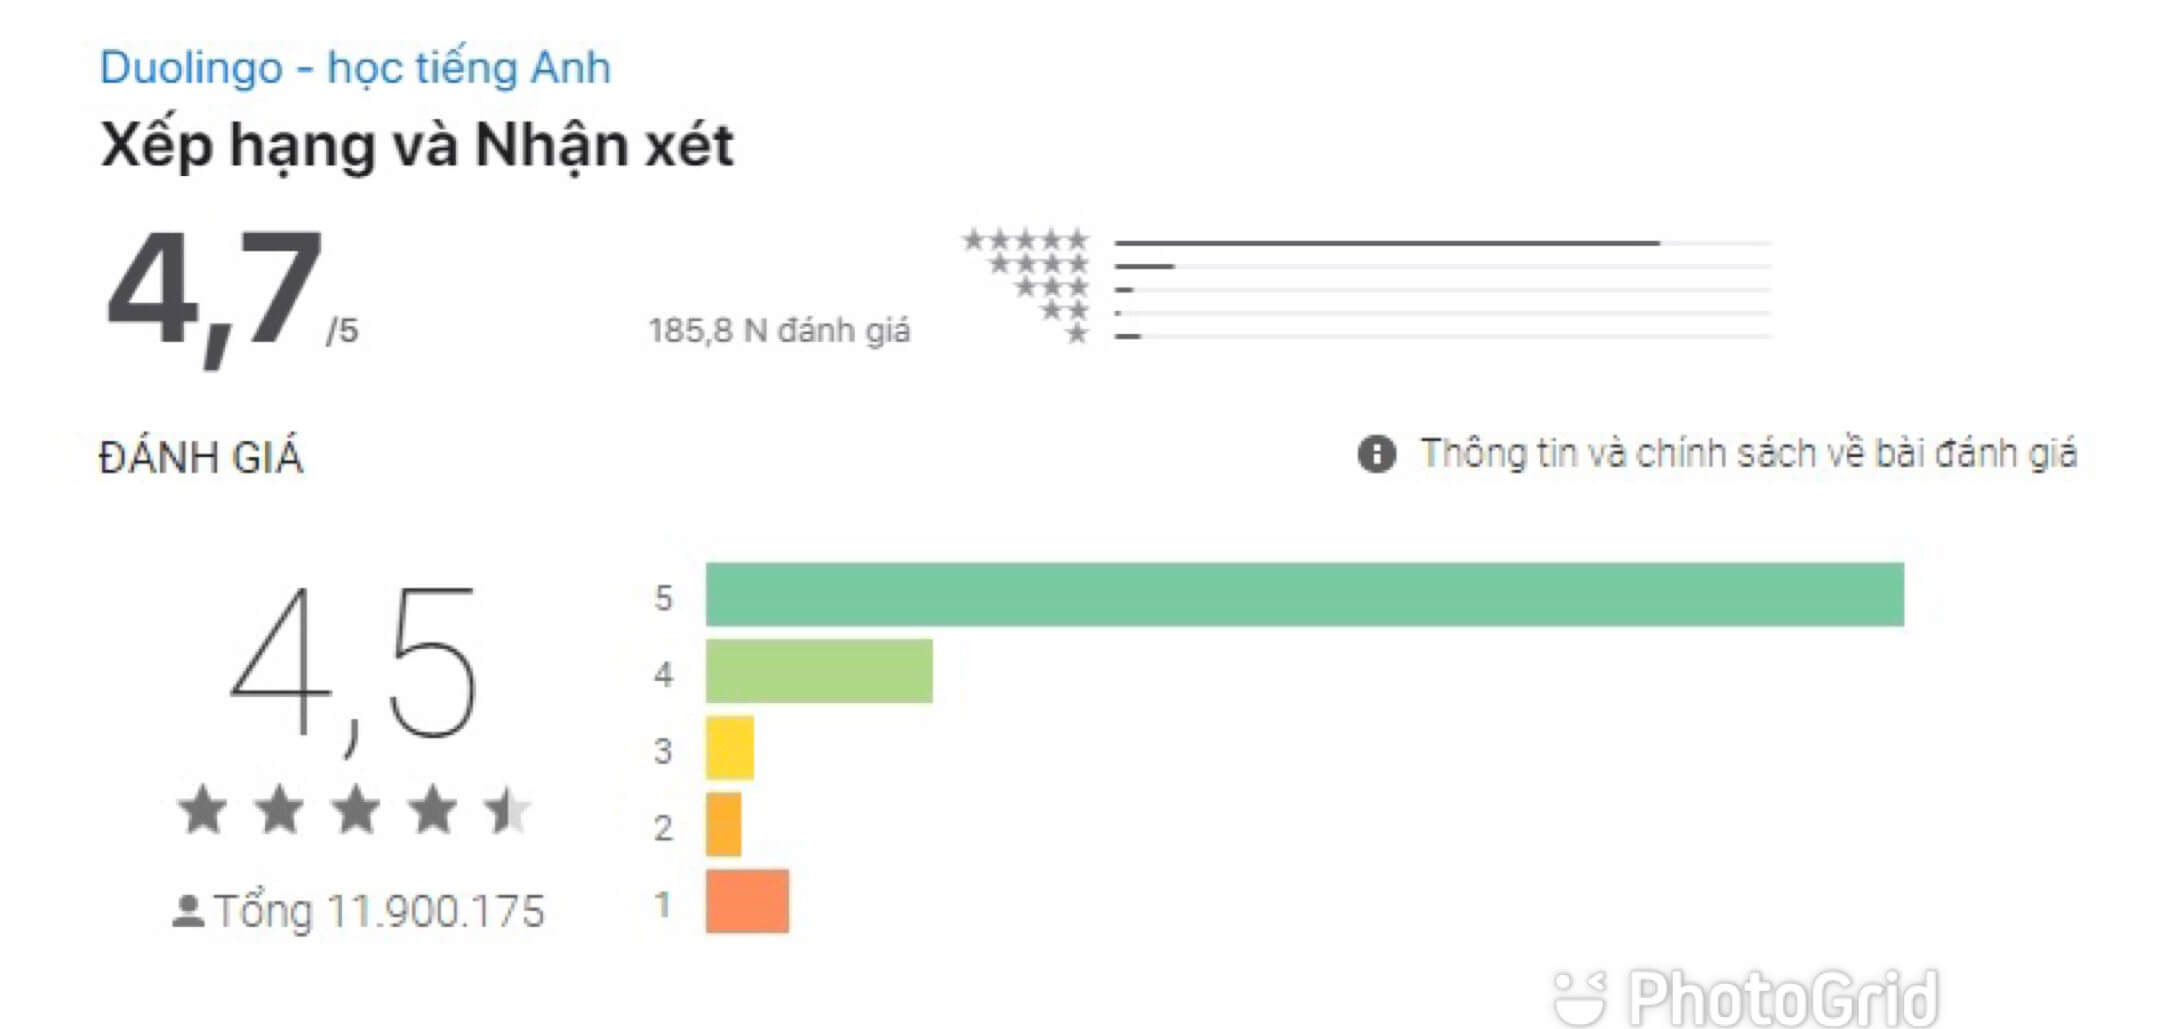 Đánh giá của ứng dụng Duolingo trên iOS và Android